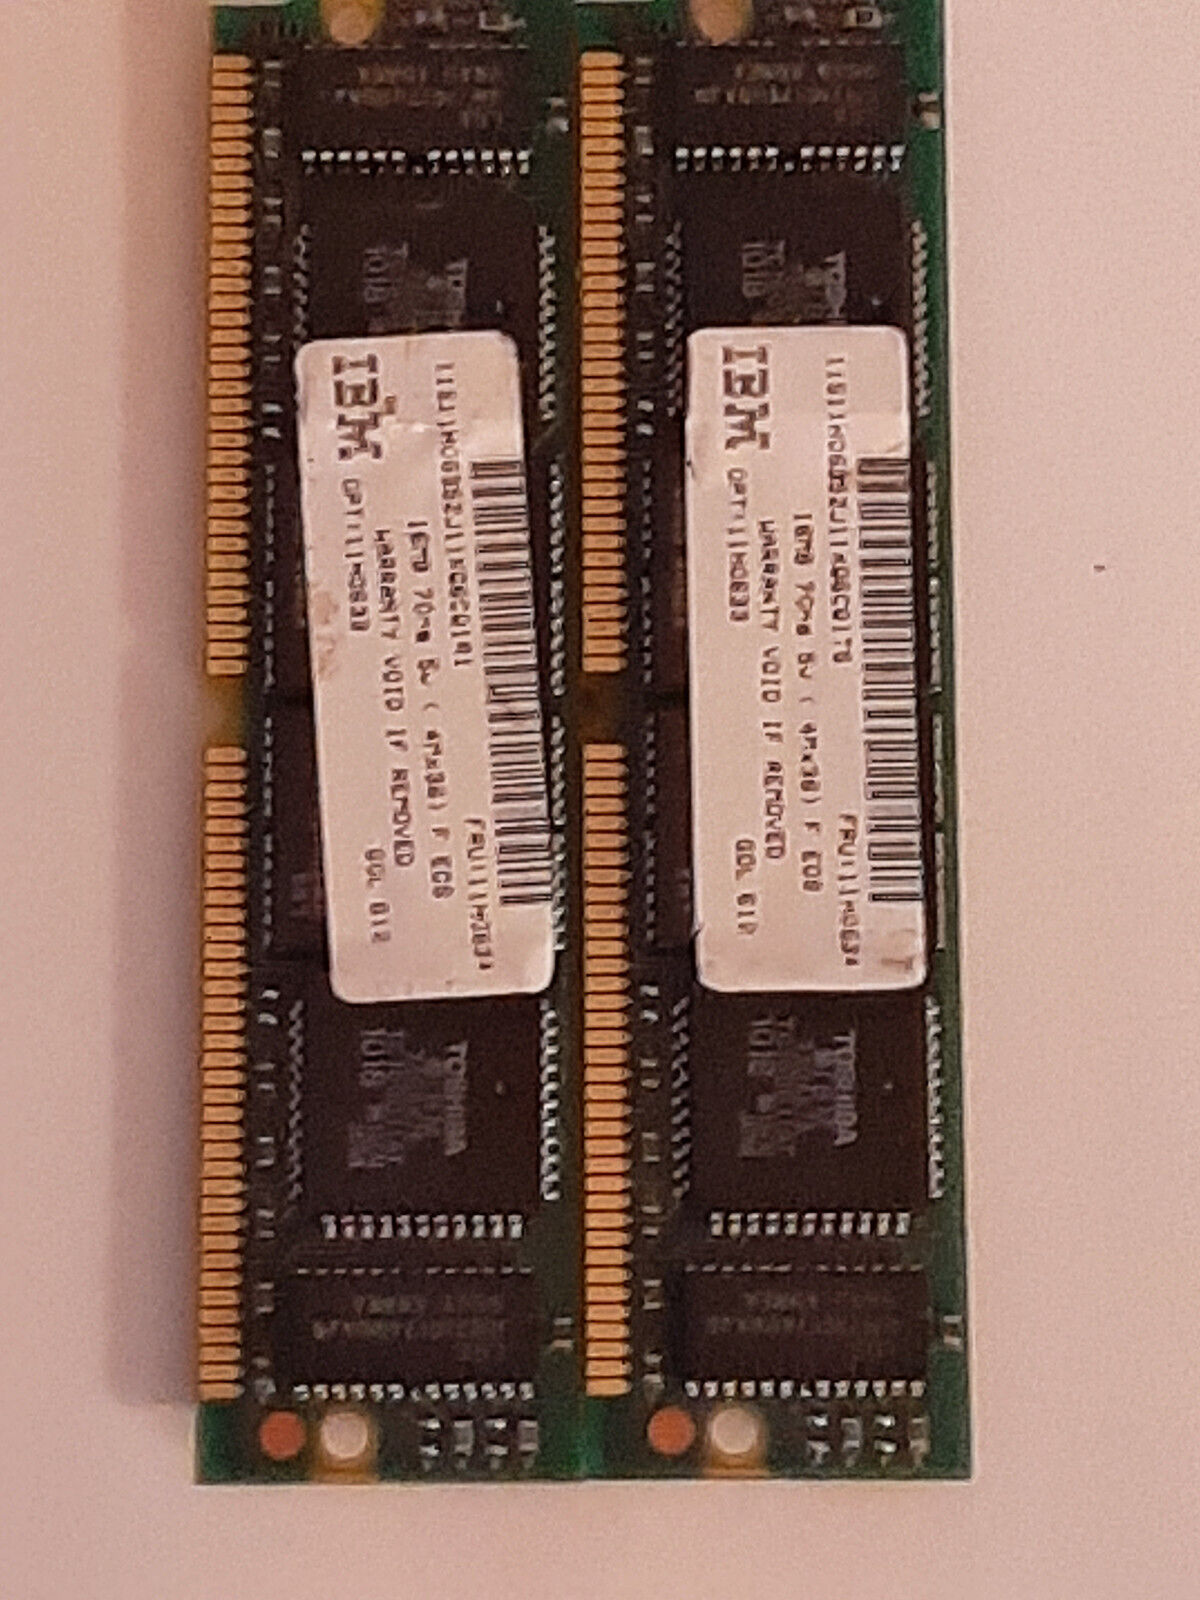 2 x IBM 16 MB 4x36 72 pin 70 ns 5 v EOS SIMM